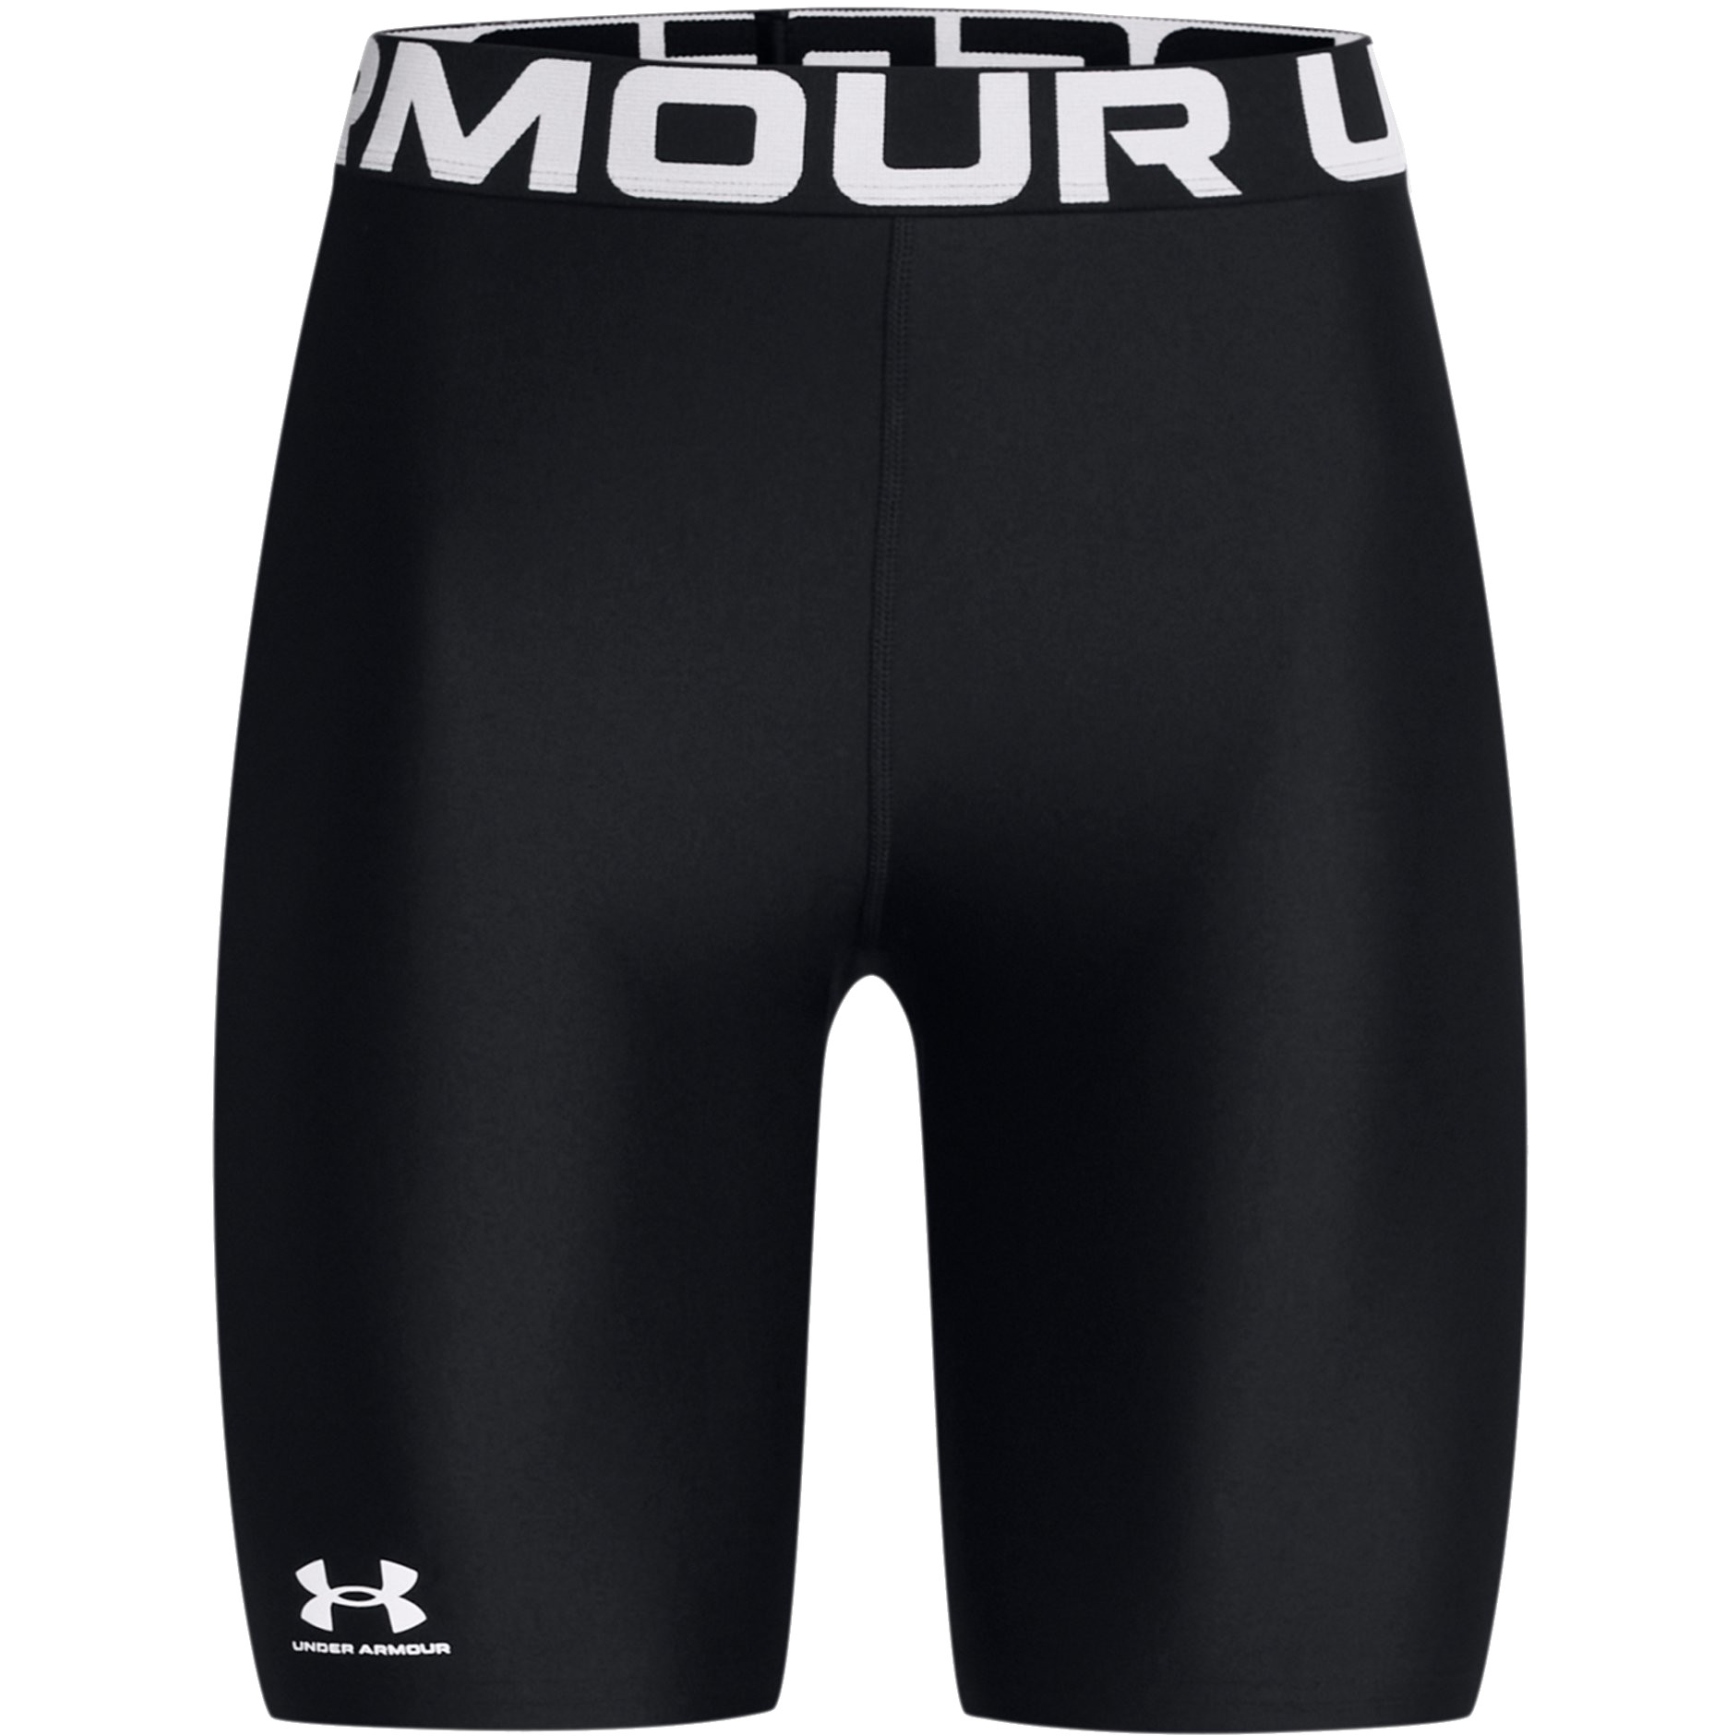 Produktbild von Under Armour HeatGear® Shorts Damen (20 cm) - Schwarz/Weiß